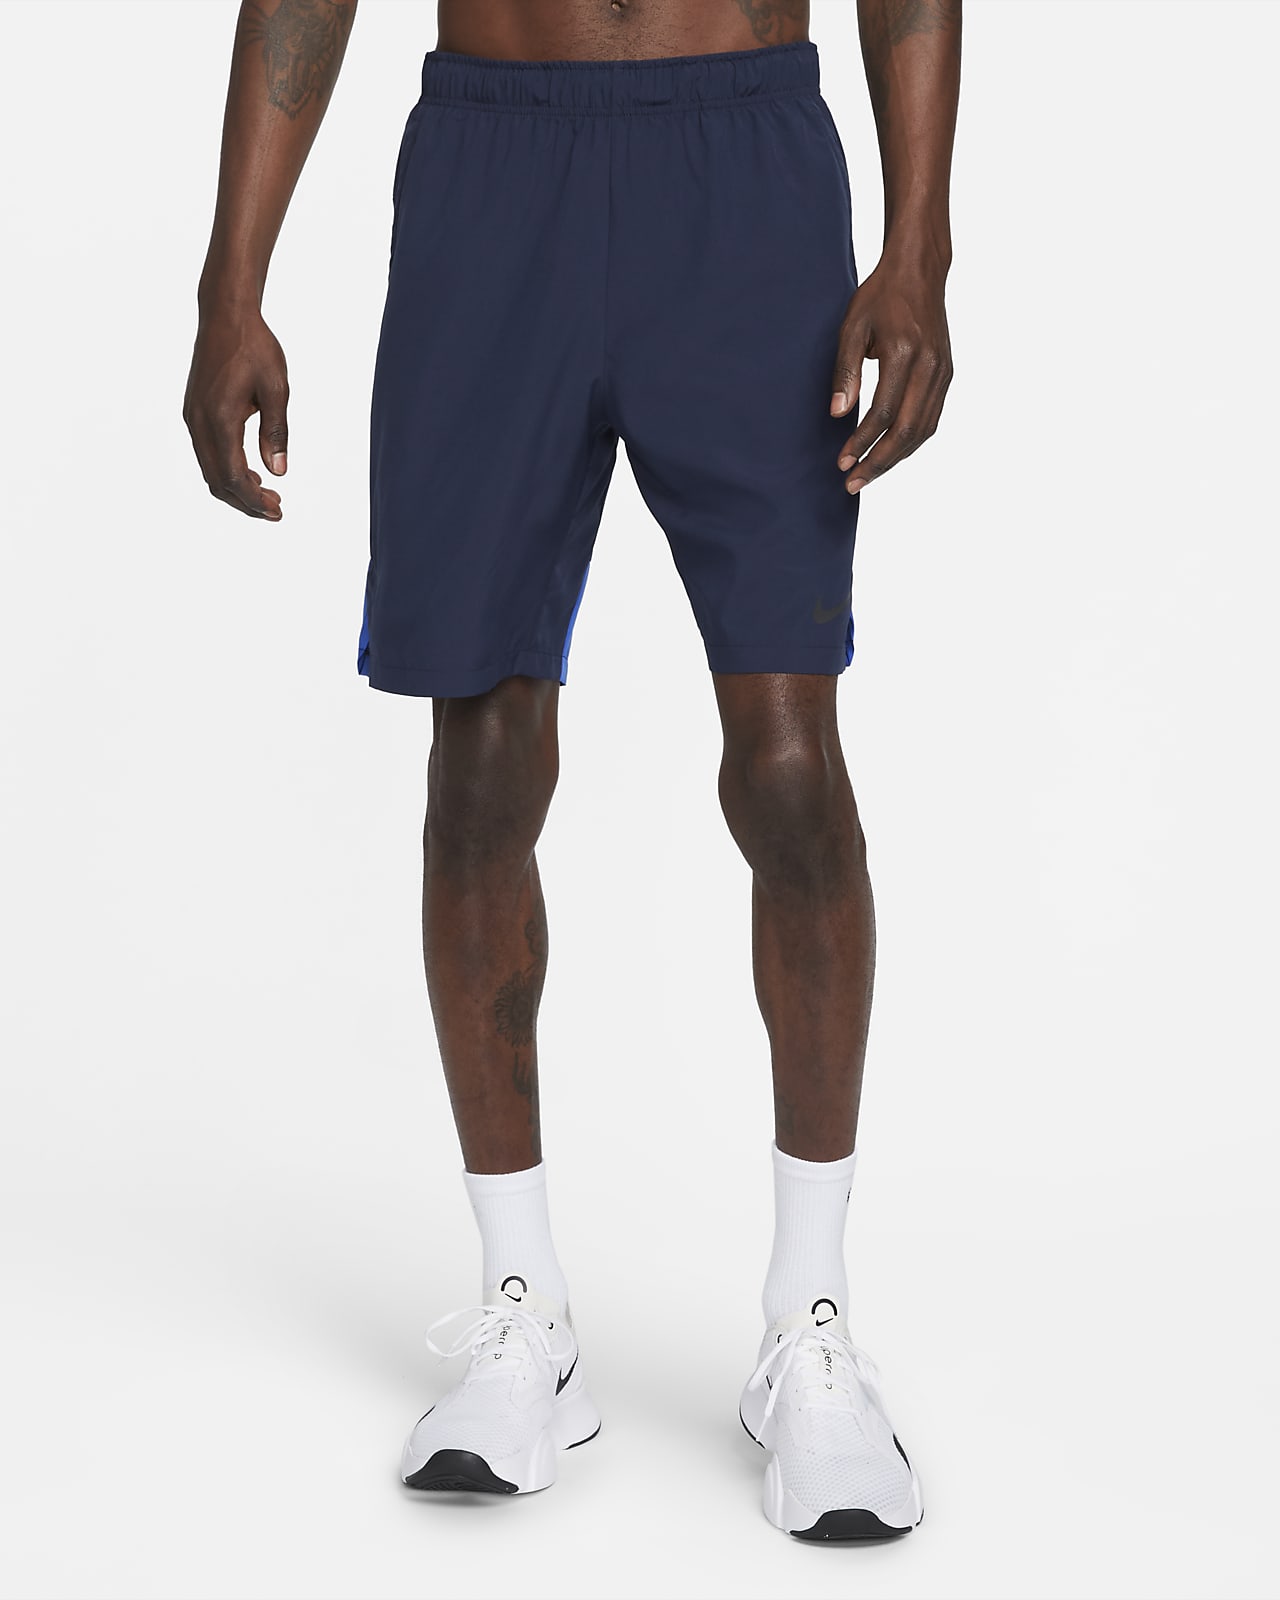 Nike Men's 9" Woven Shorts. Nike.com